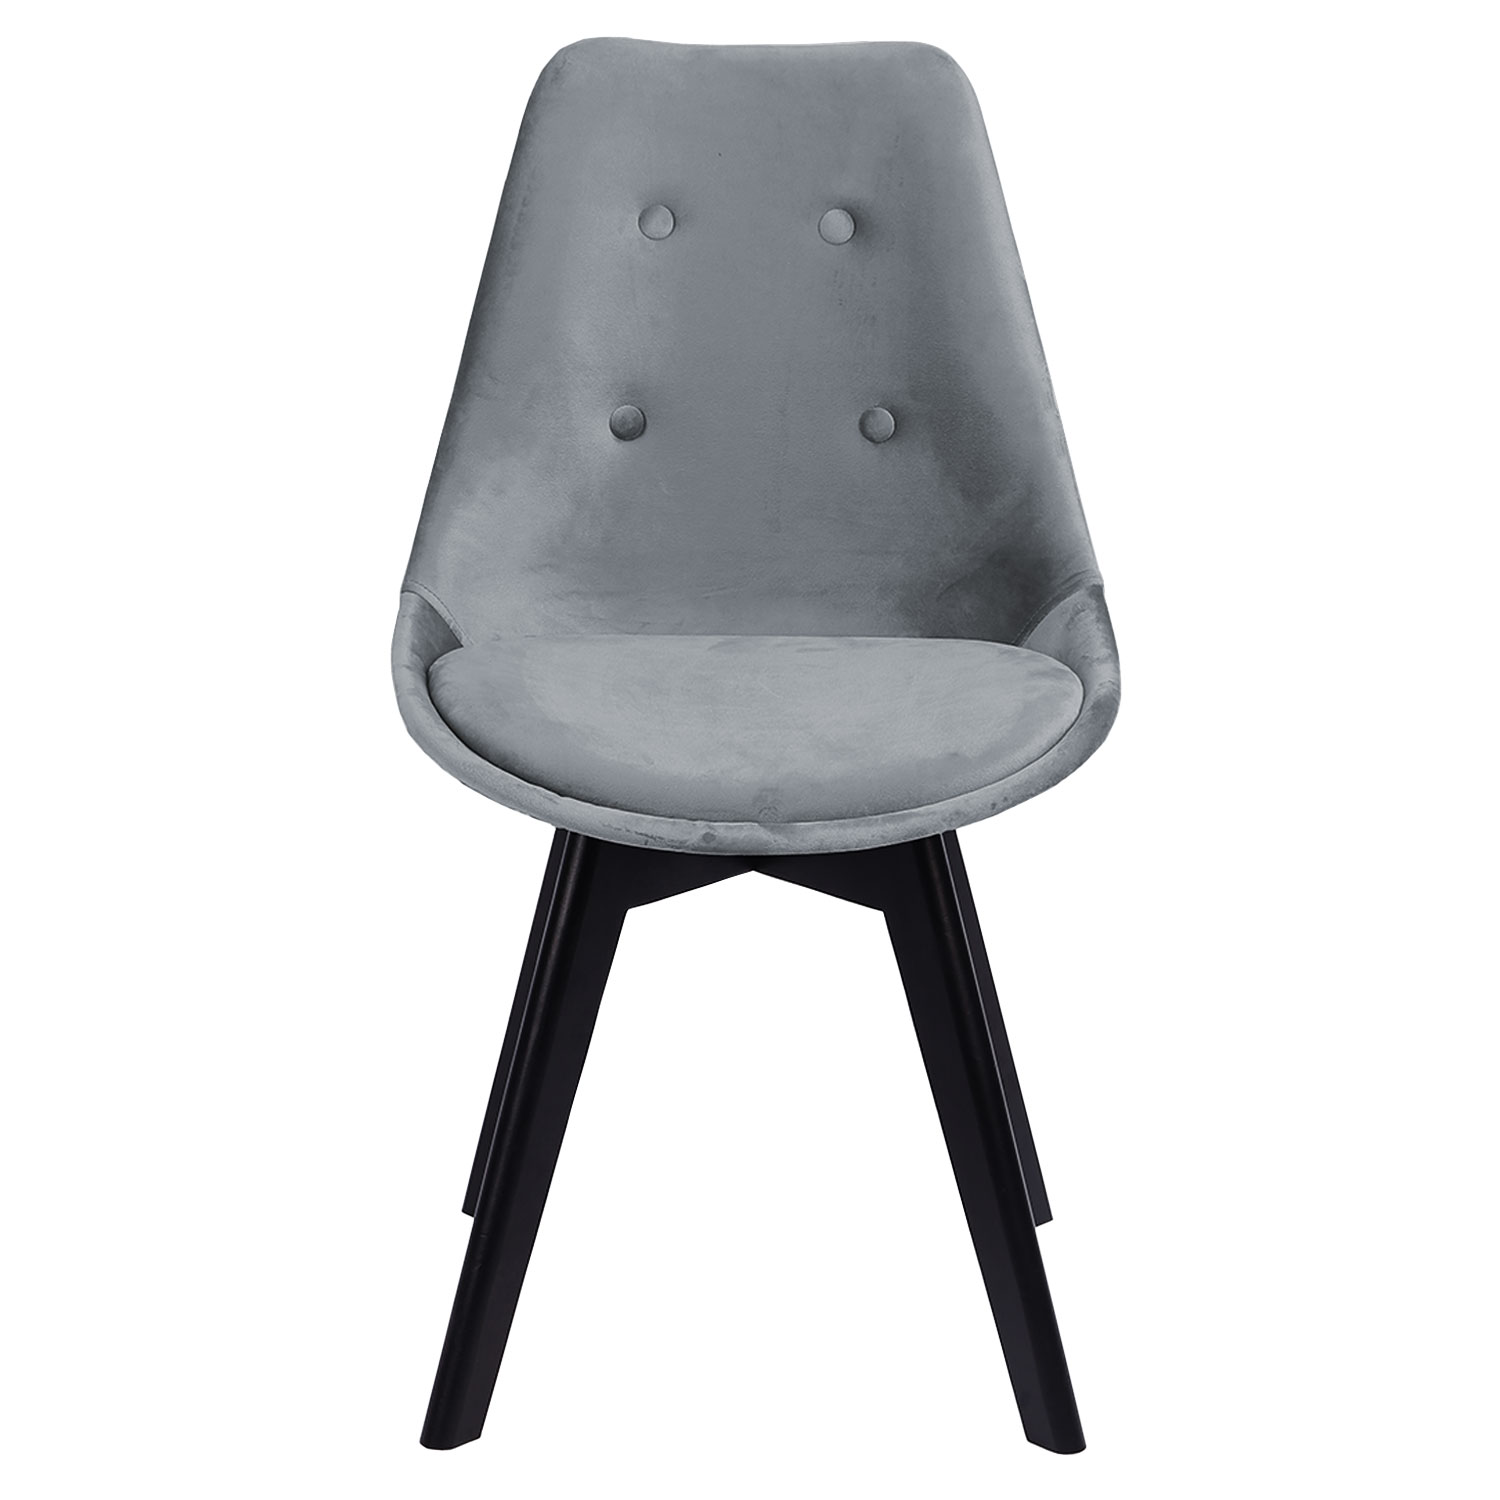 Set van 4 grijze NORA fluwelen stoelen met kussen